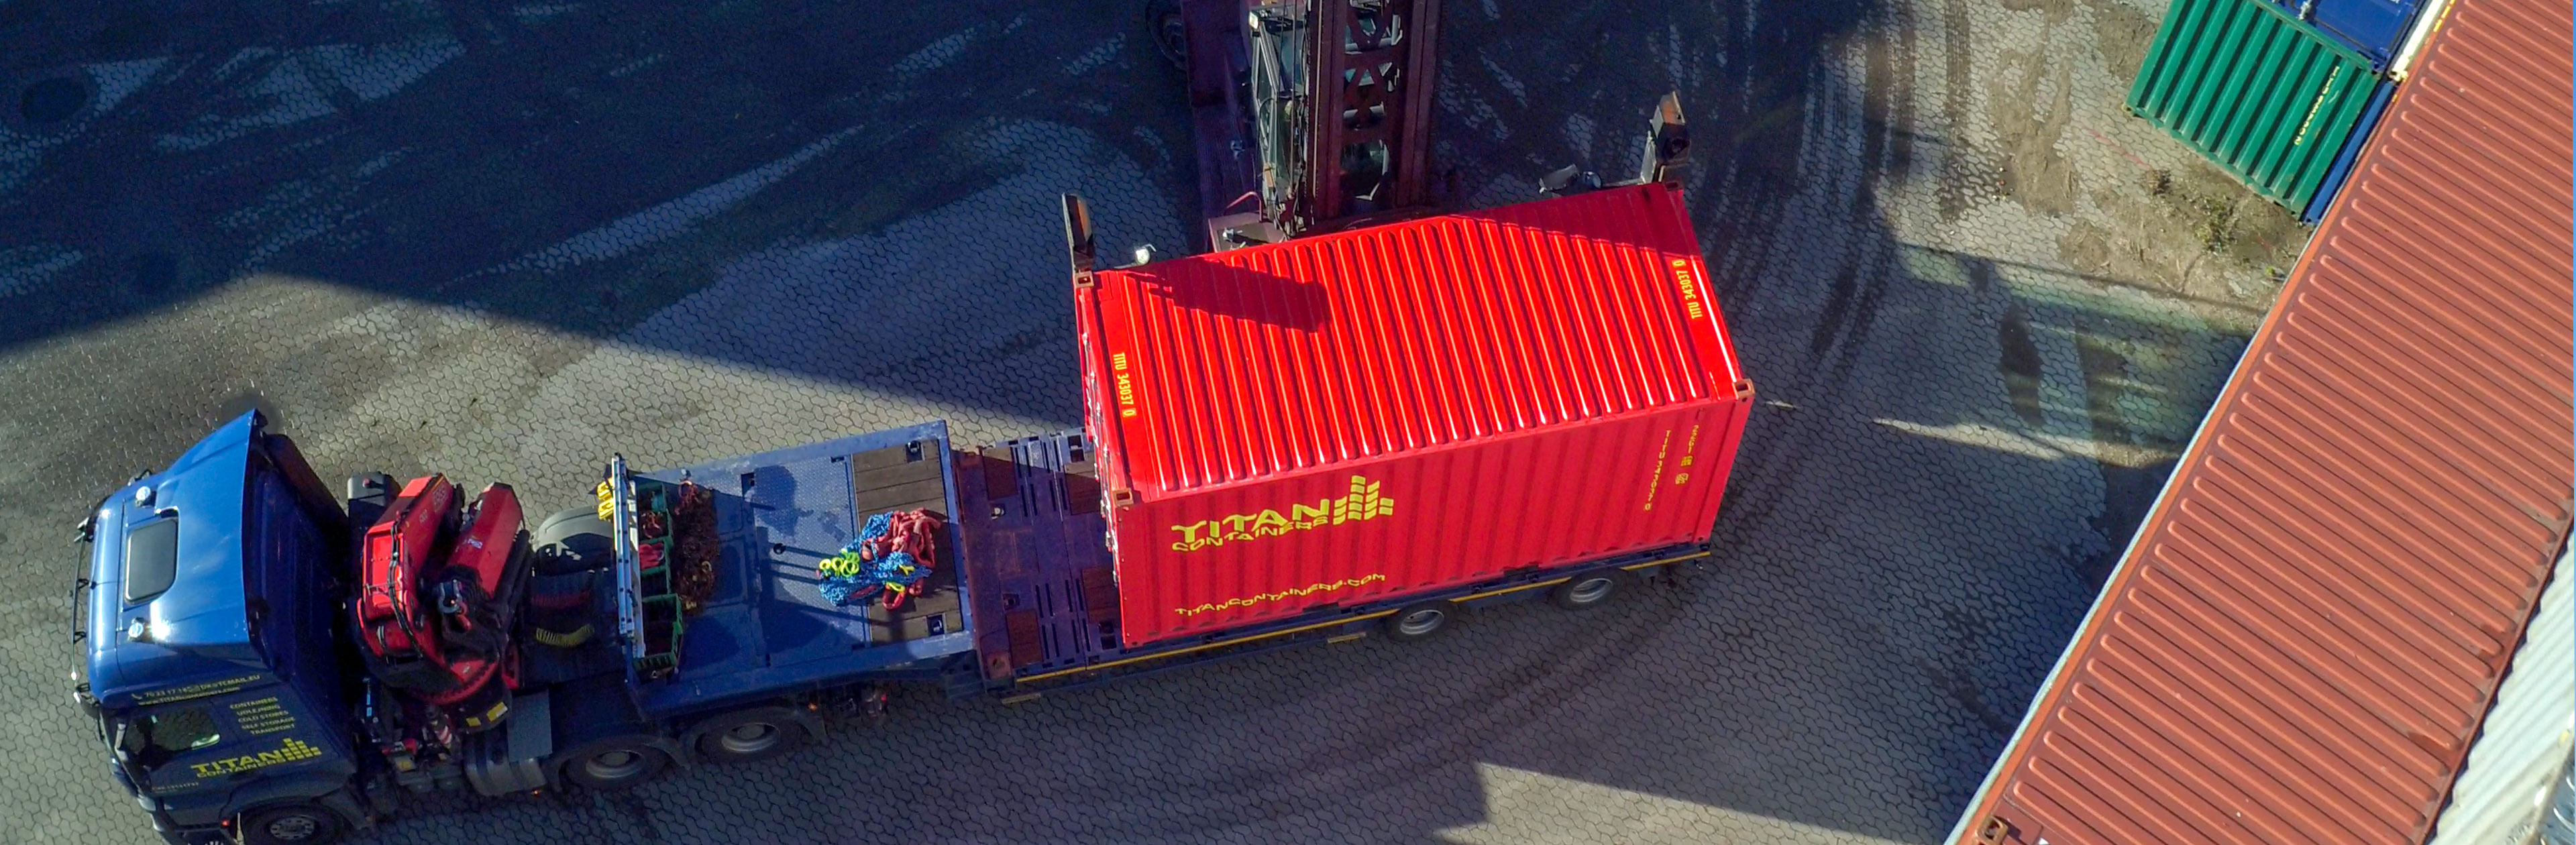 Container op vrachtwagen